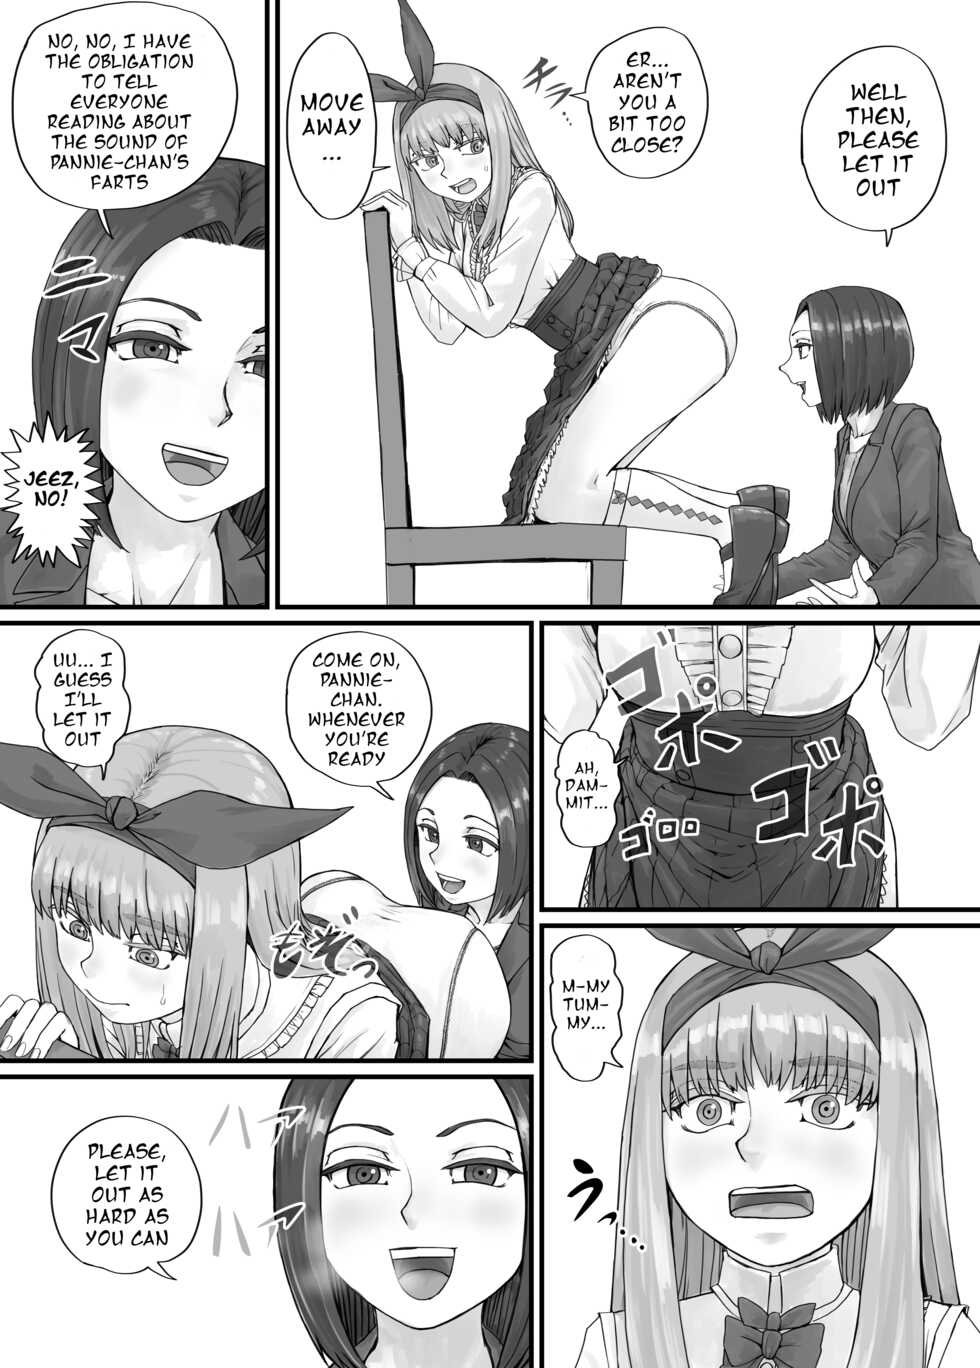 [DODOMESU3SEI] Panietta-chan Fanbox Tokubetsu Kikaku [English] - Page 4